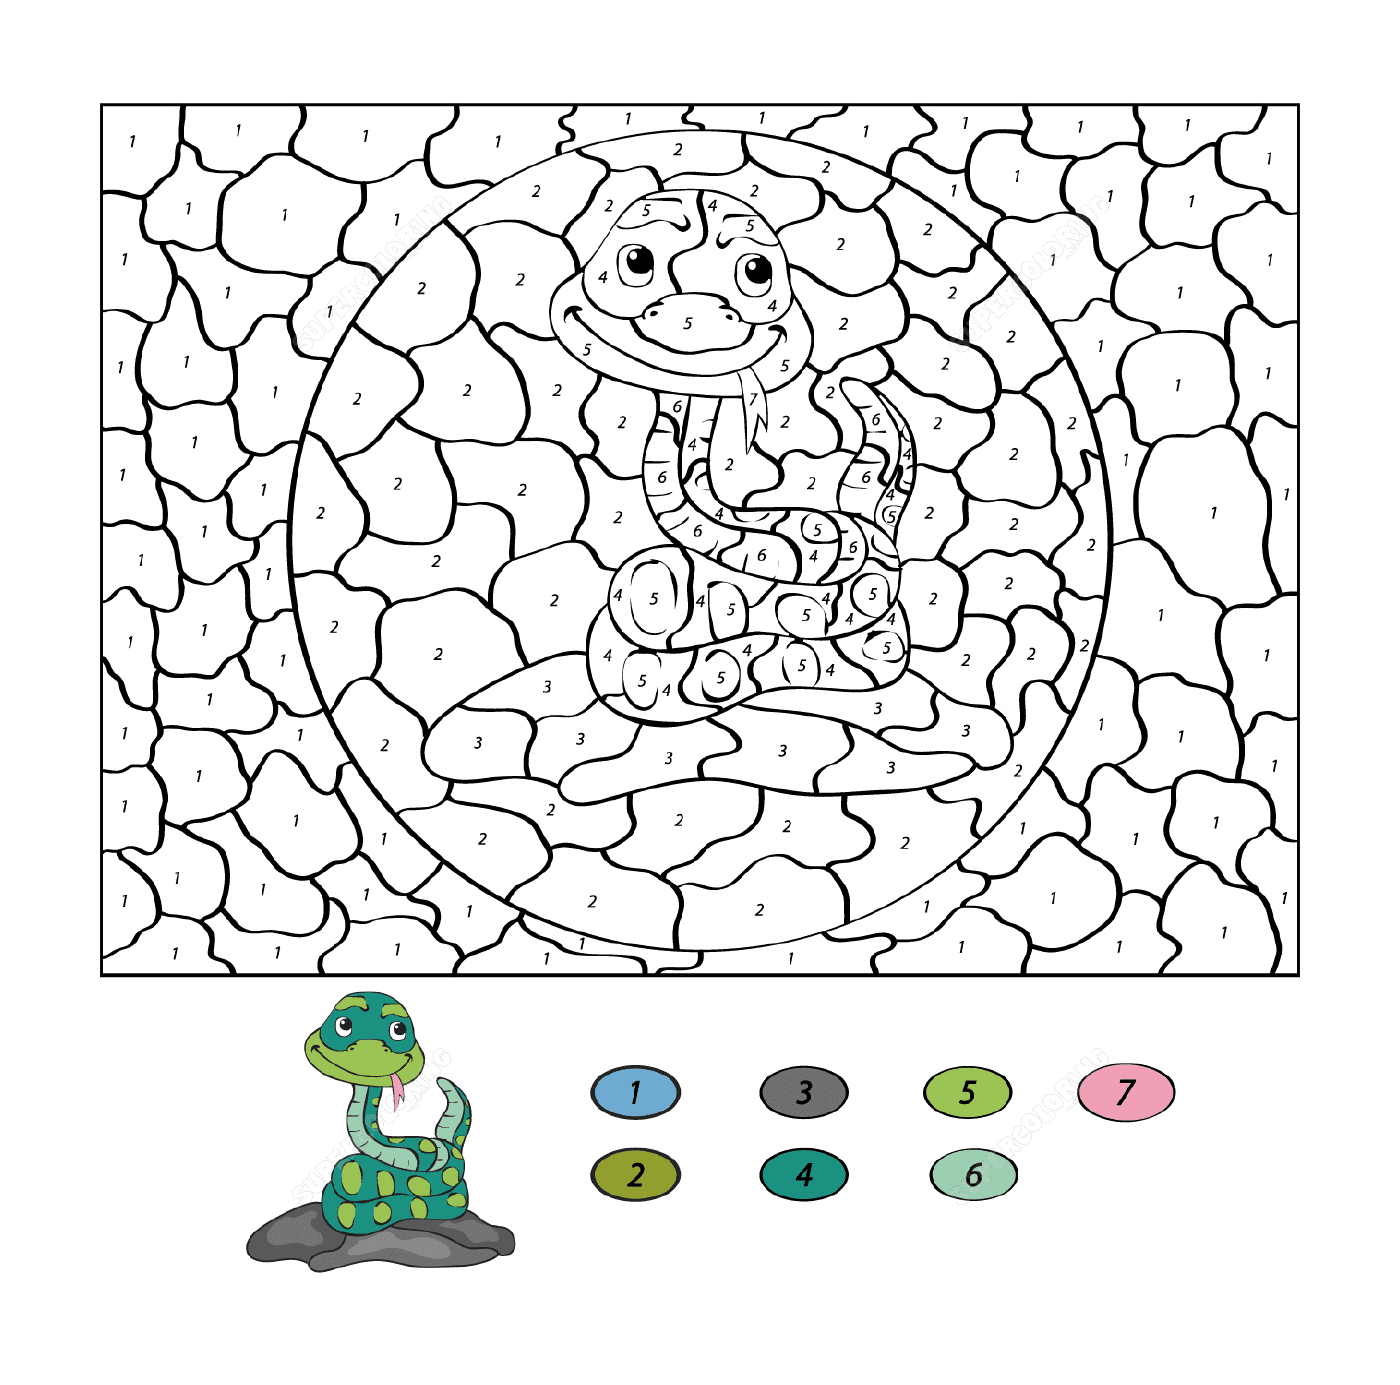  Un serpente dei cartoni animati con un dinosauro 